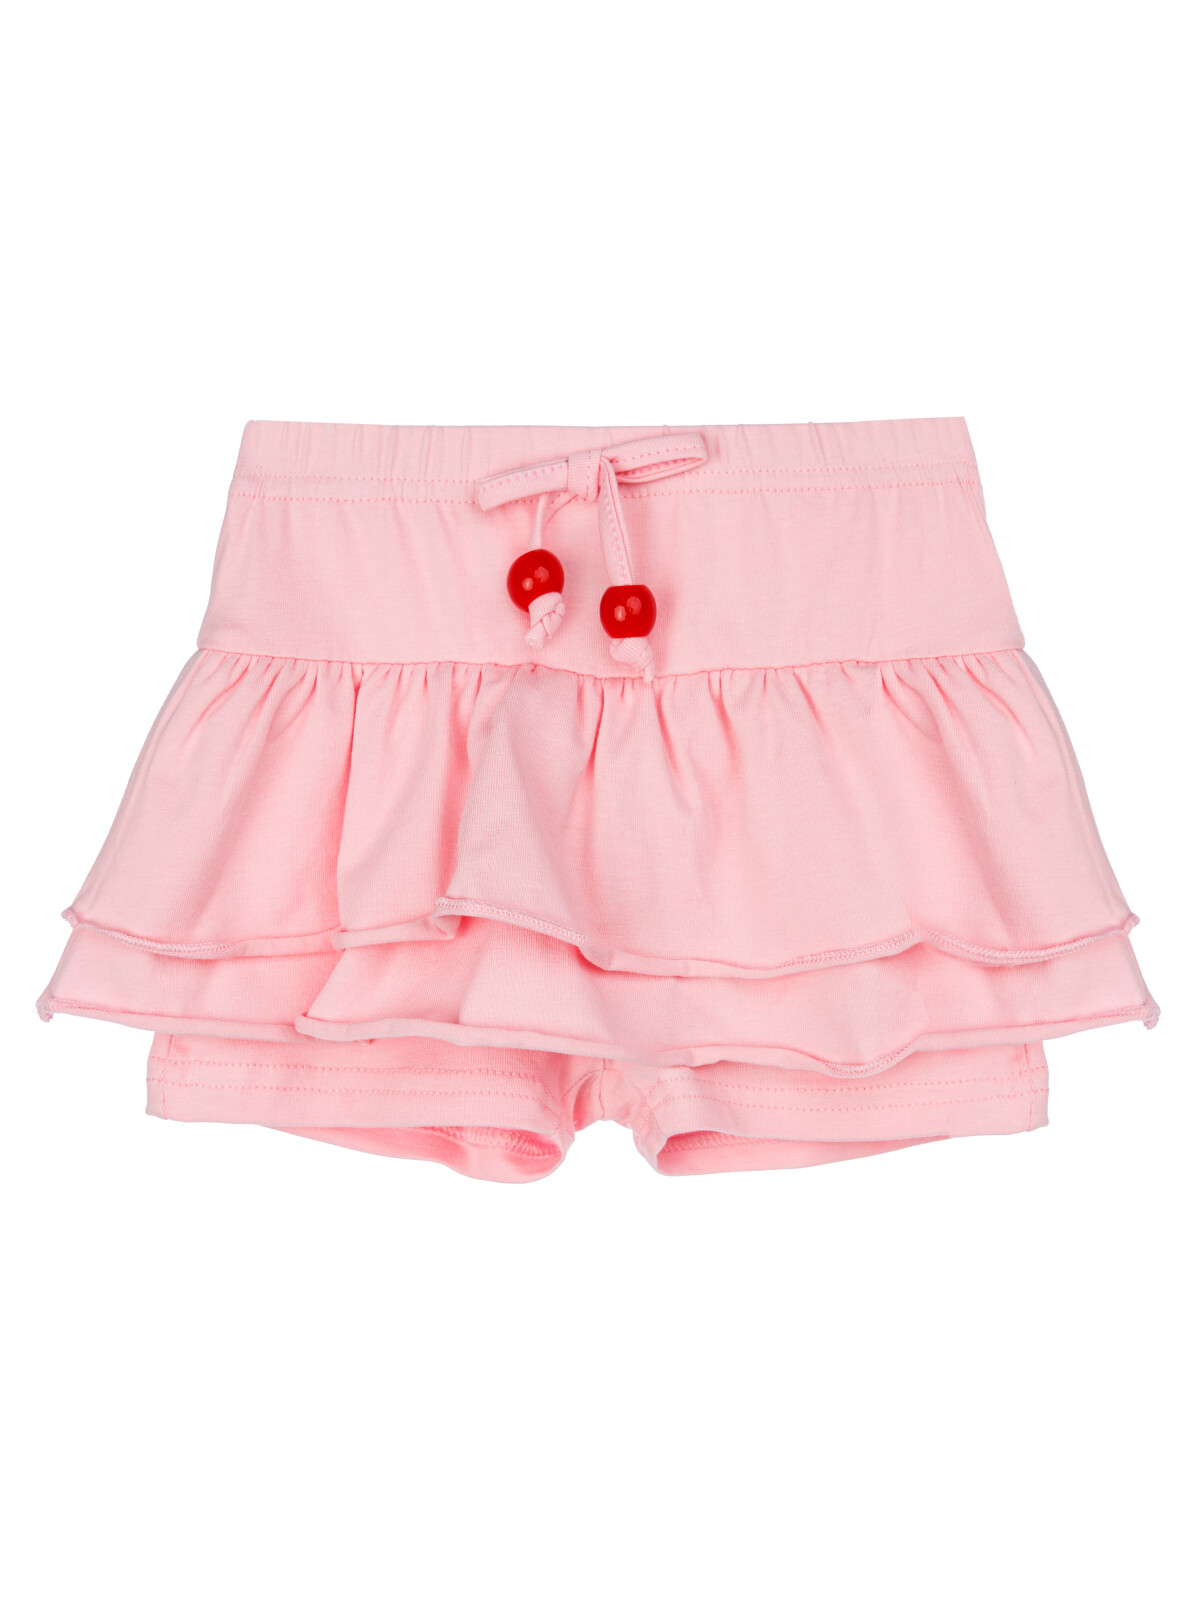 Юбка-шорты детская PlayToday 12429022, светло-розовый, 80